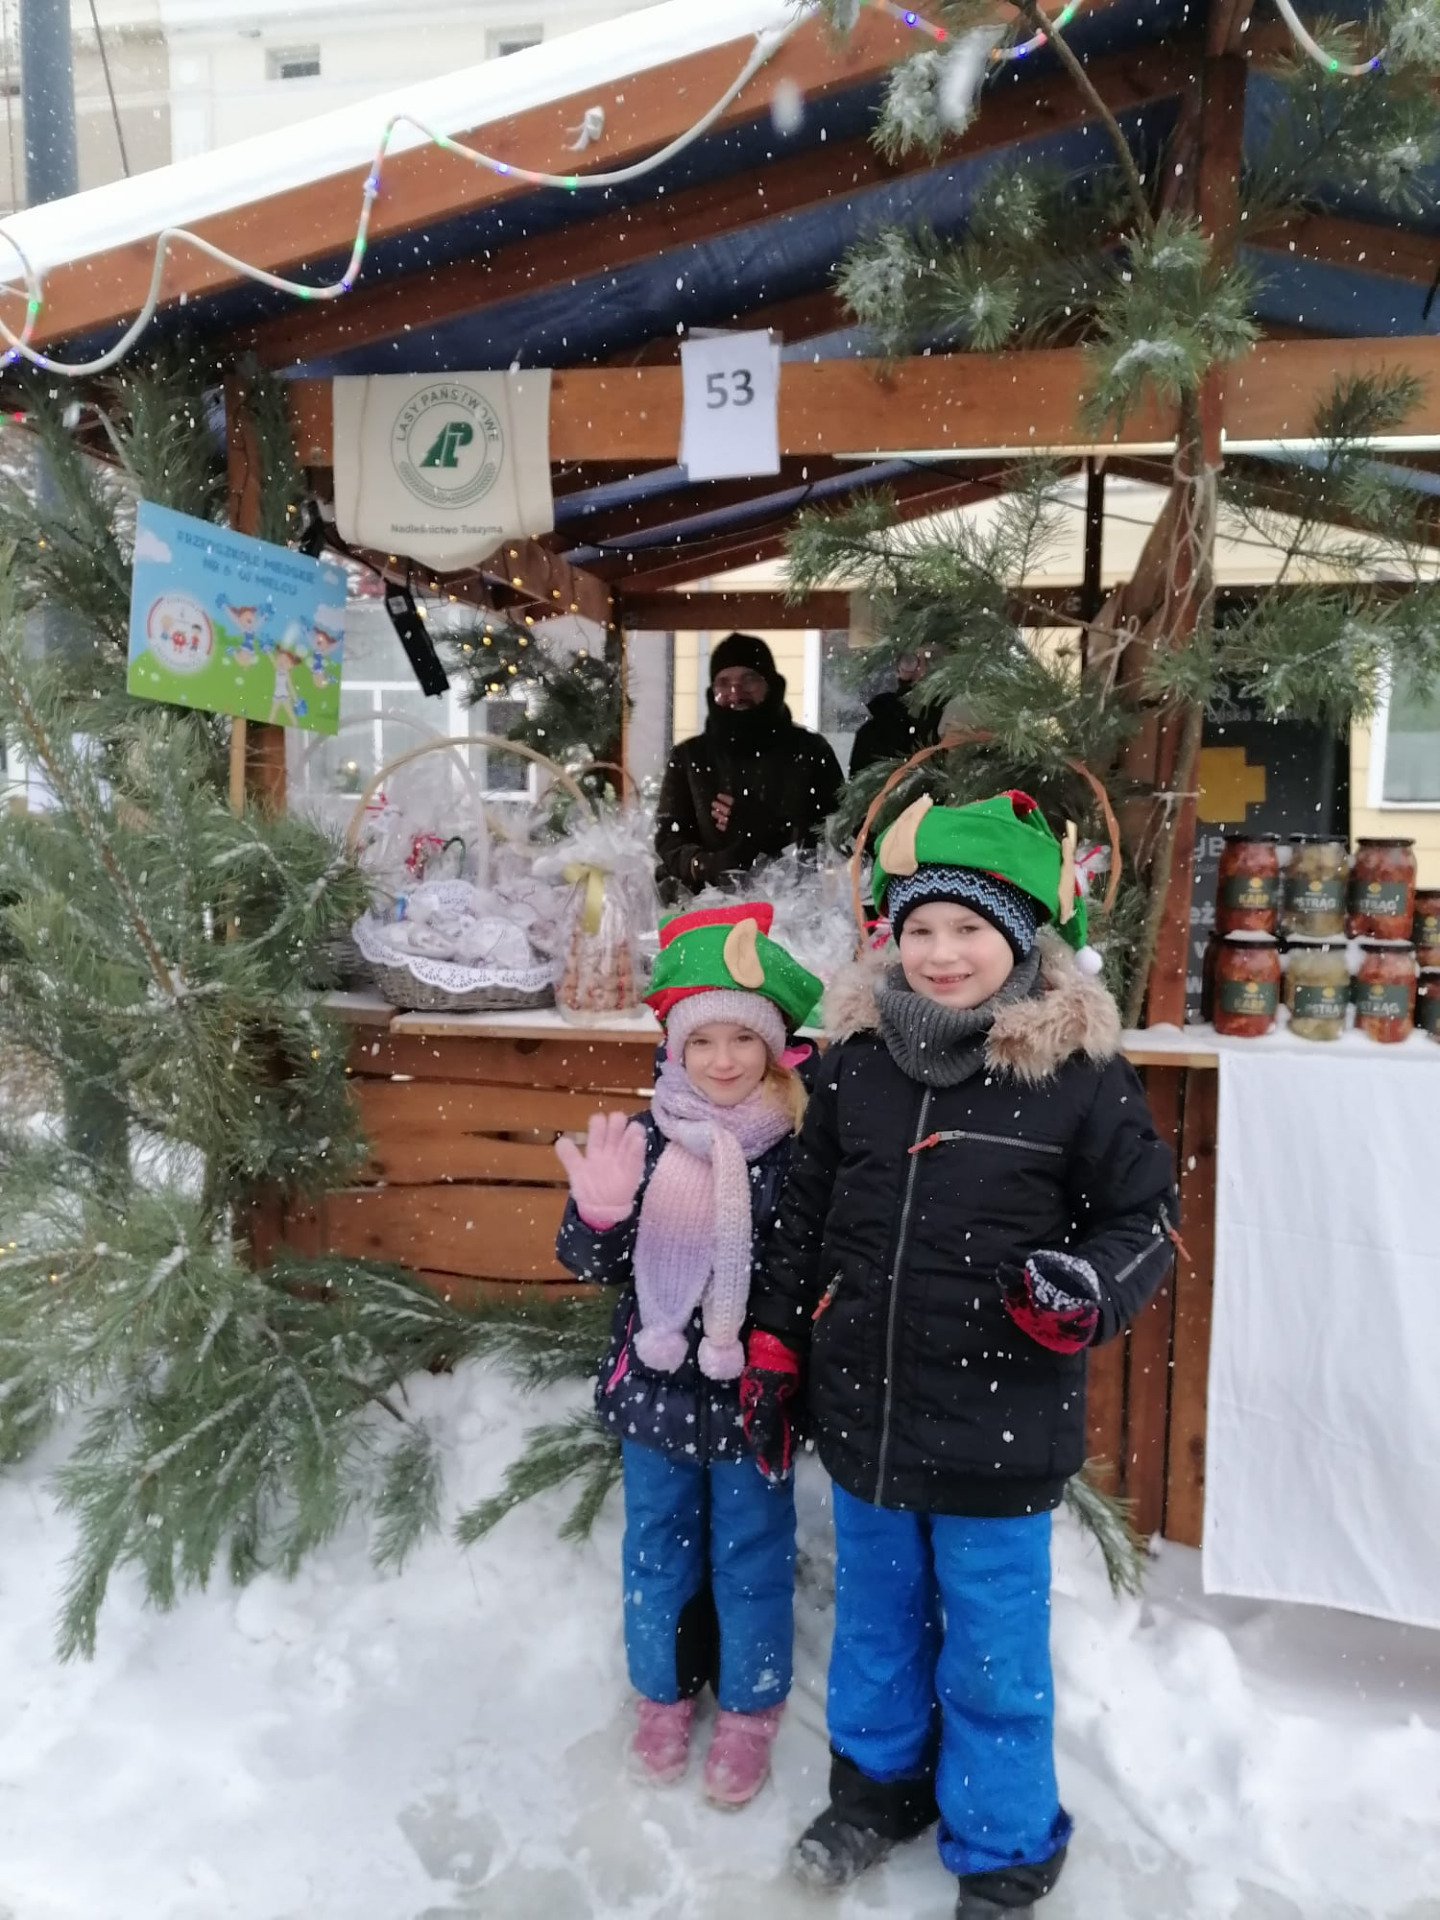 Na pierwszym planie pośrodku zdjęcia stoi dwójka dzieci chłopiec i dziewczynka w elfich czapkach na głowie. Za nimi znajduje się drewniane ne stoisko ozdobione zielonymi gałązkami choinki.